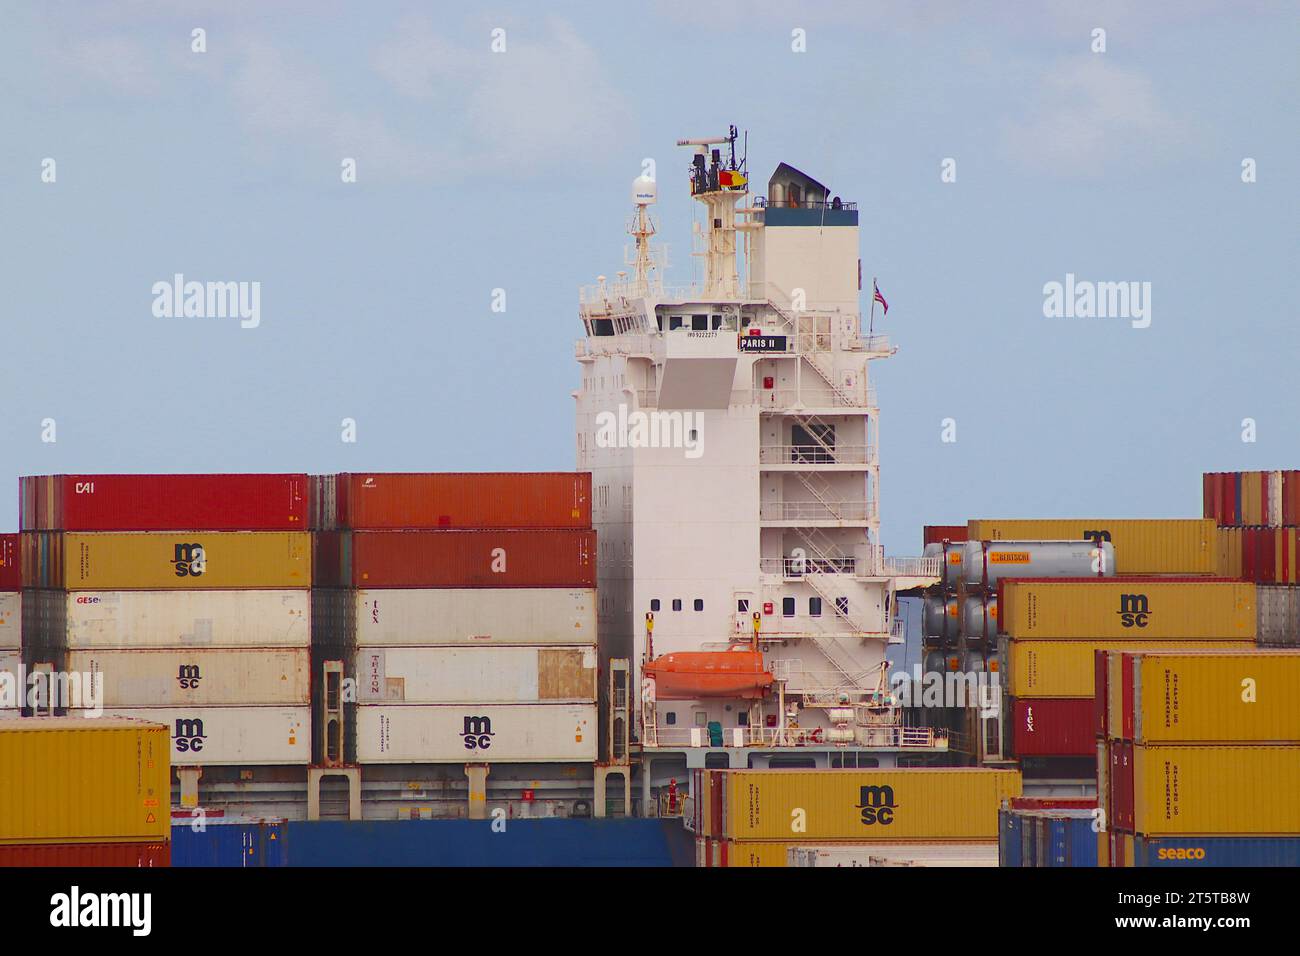 La nave portacontainer battente bandiera liberiana Paris II da 77.000 tonnellate scarica alcuni dei numerosi container dai suoi ponti a Las Palmas, Grand Canaria. Foto Stock